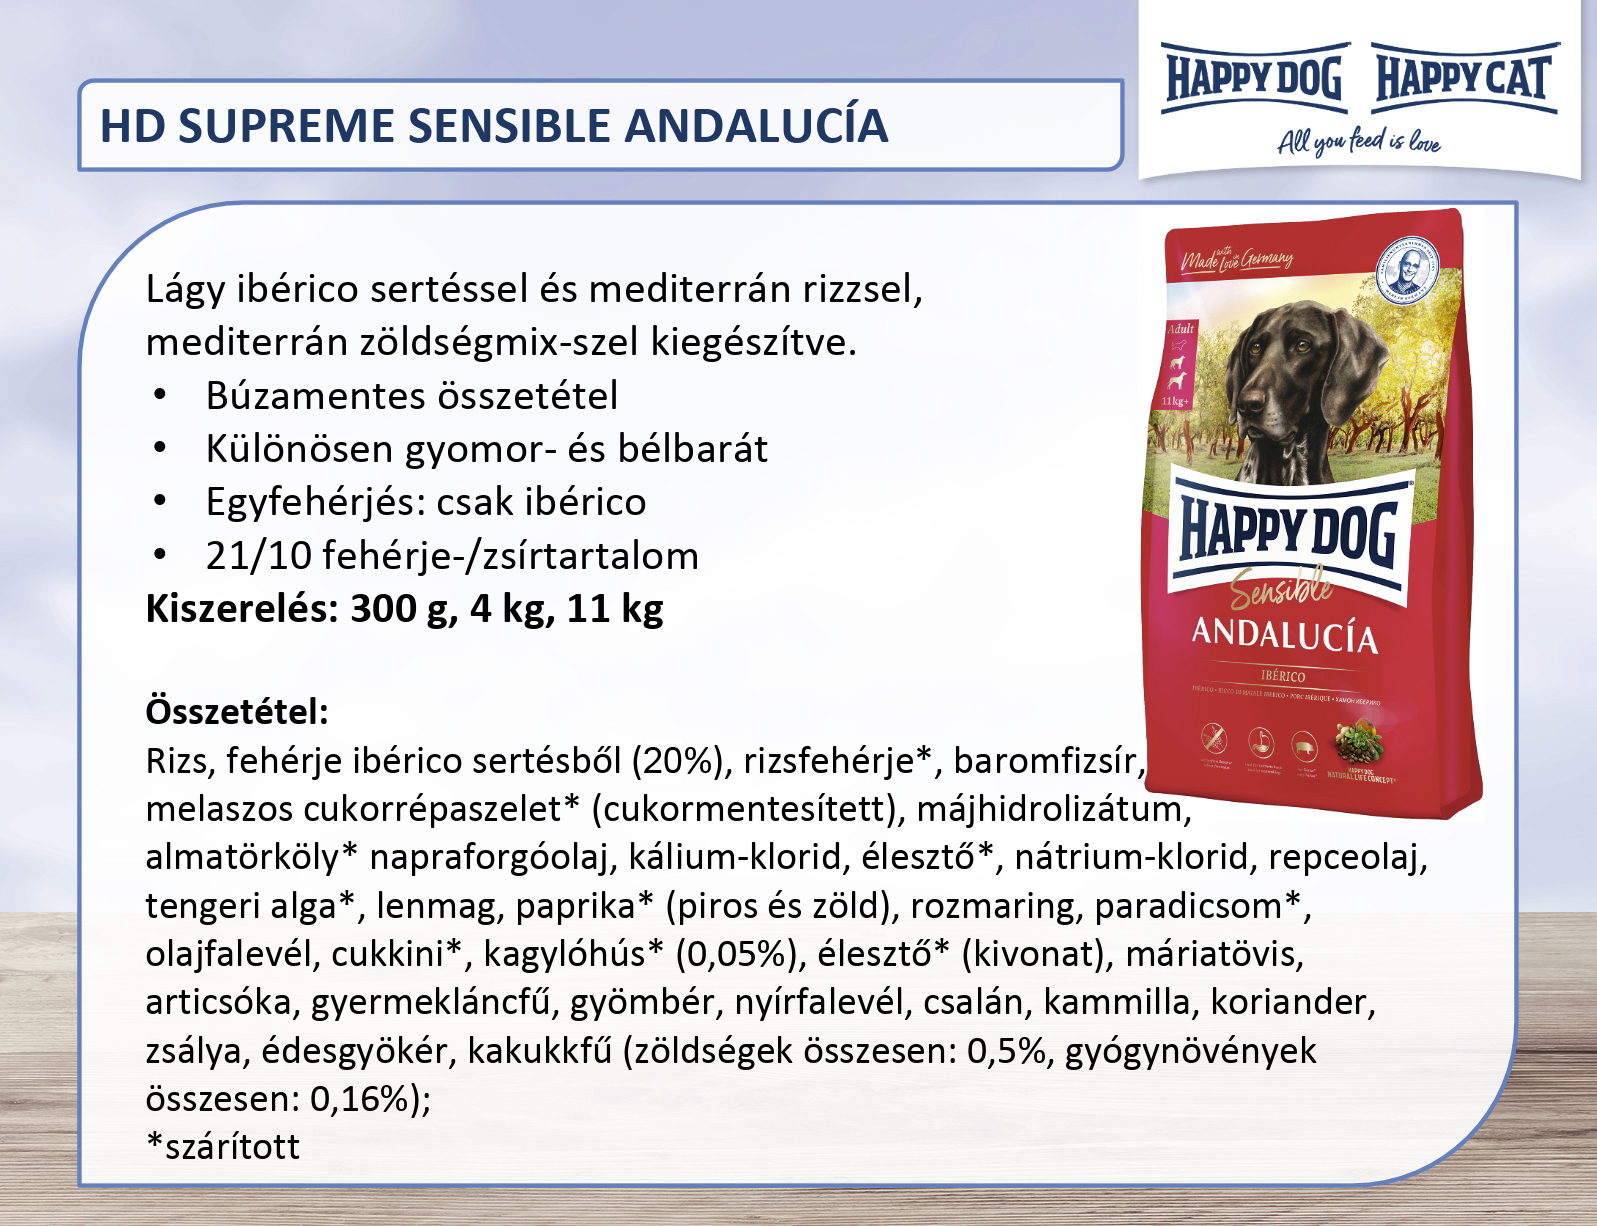 Happy Dog Andalucía hrana pentru câini cu carne de porc iberică și amestec de legume mediteraneene - zoom